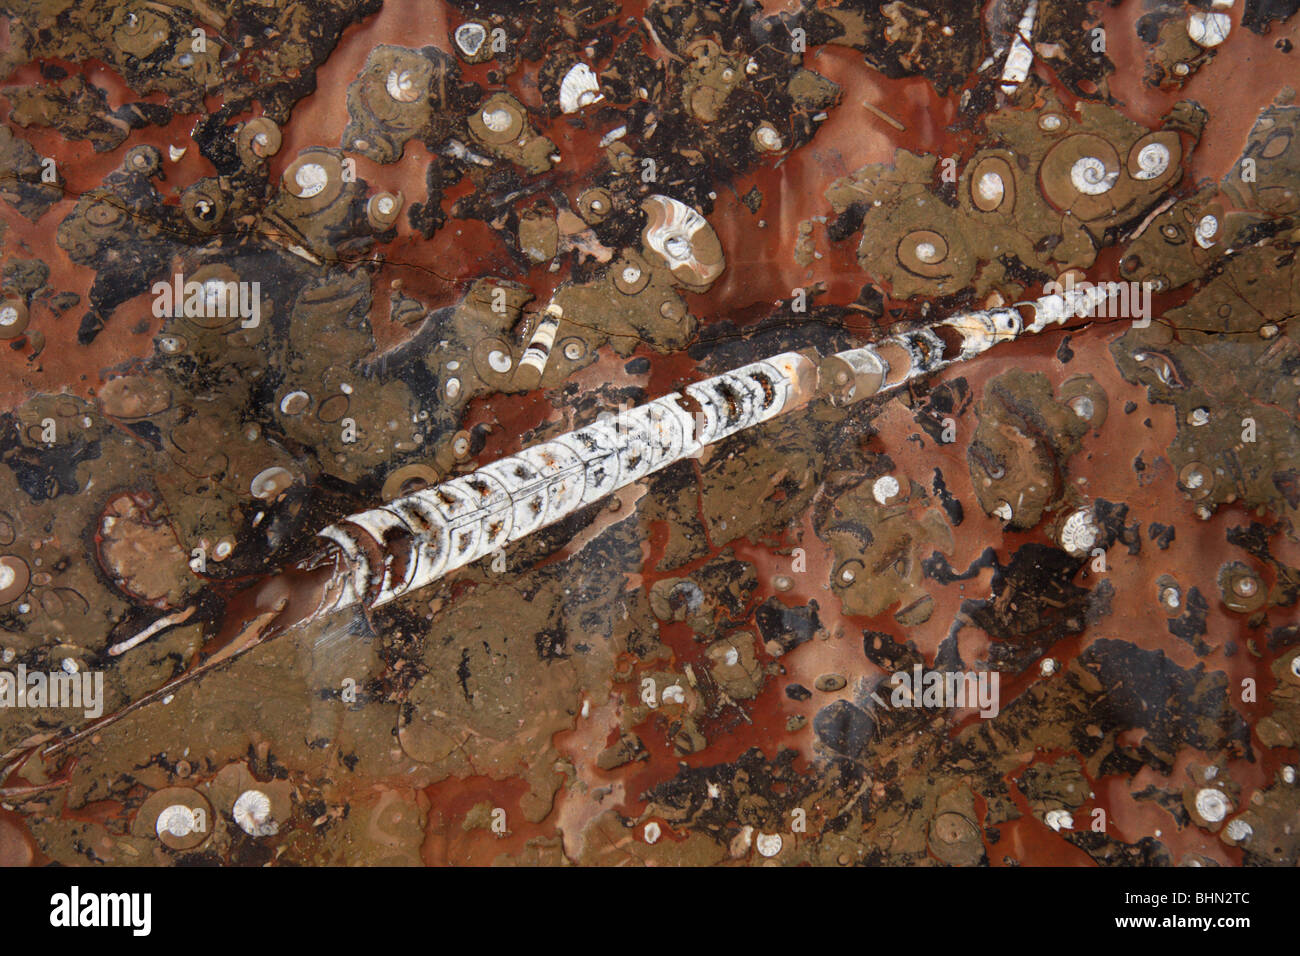 Dettaglio di belemnite fossile di fossili di fabbrica di trasformazione in Marocco, Africa del Nord Foto Stock